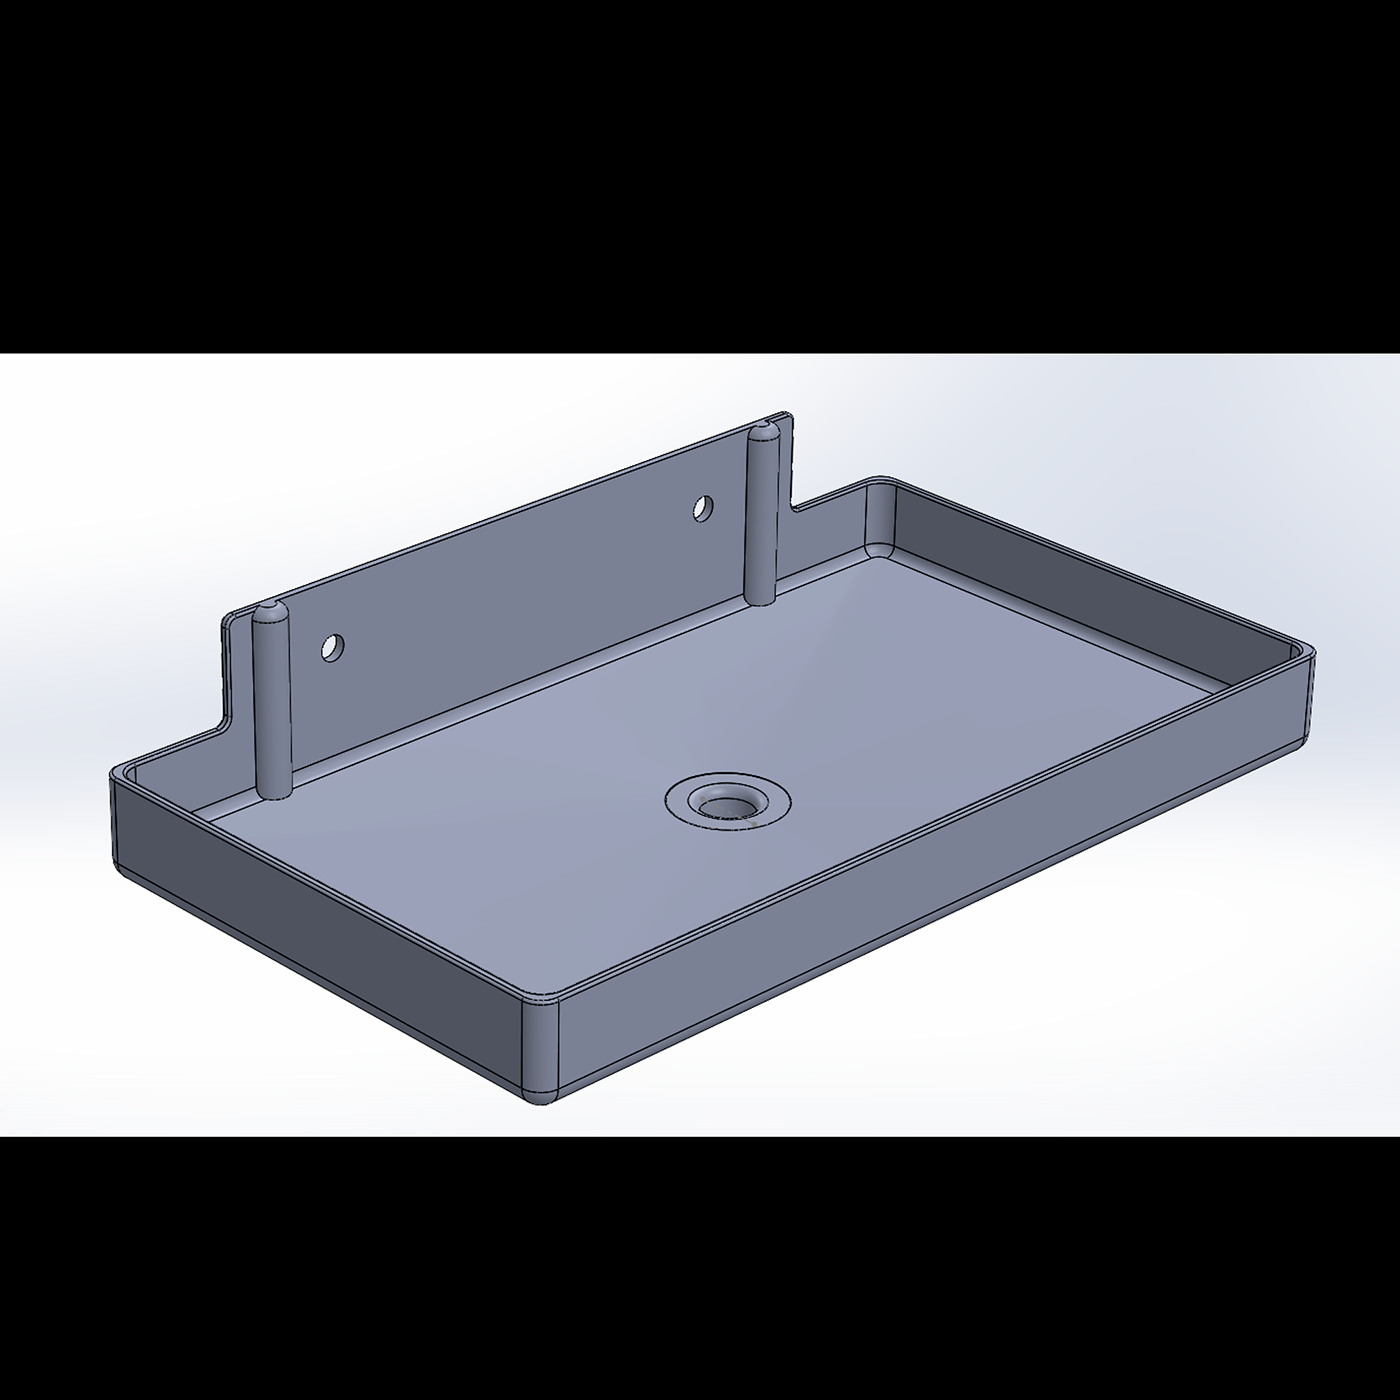 diseño industrial design 3d modeling product Render 3D indusrial design